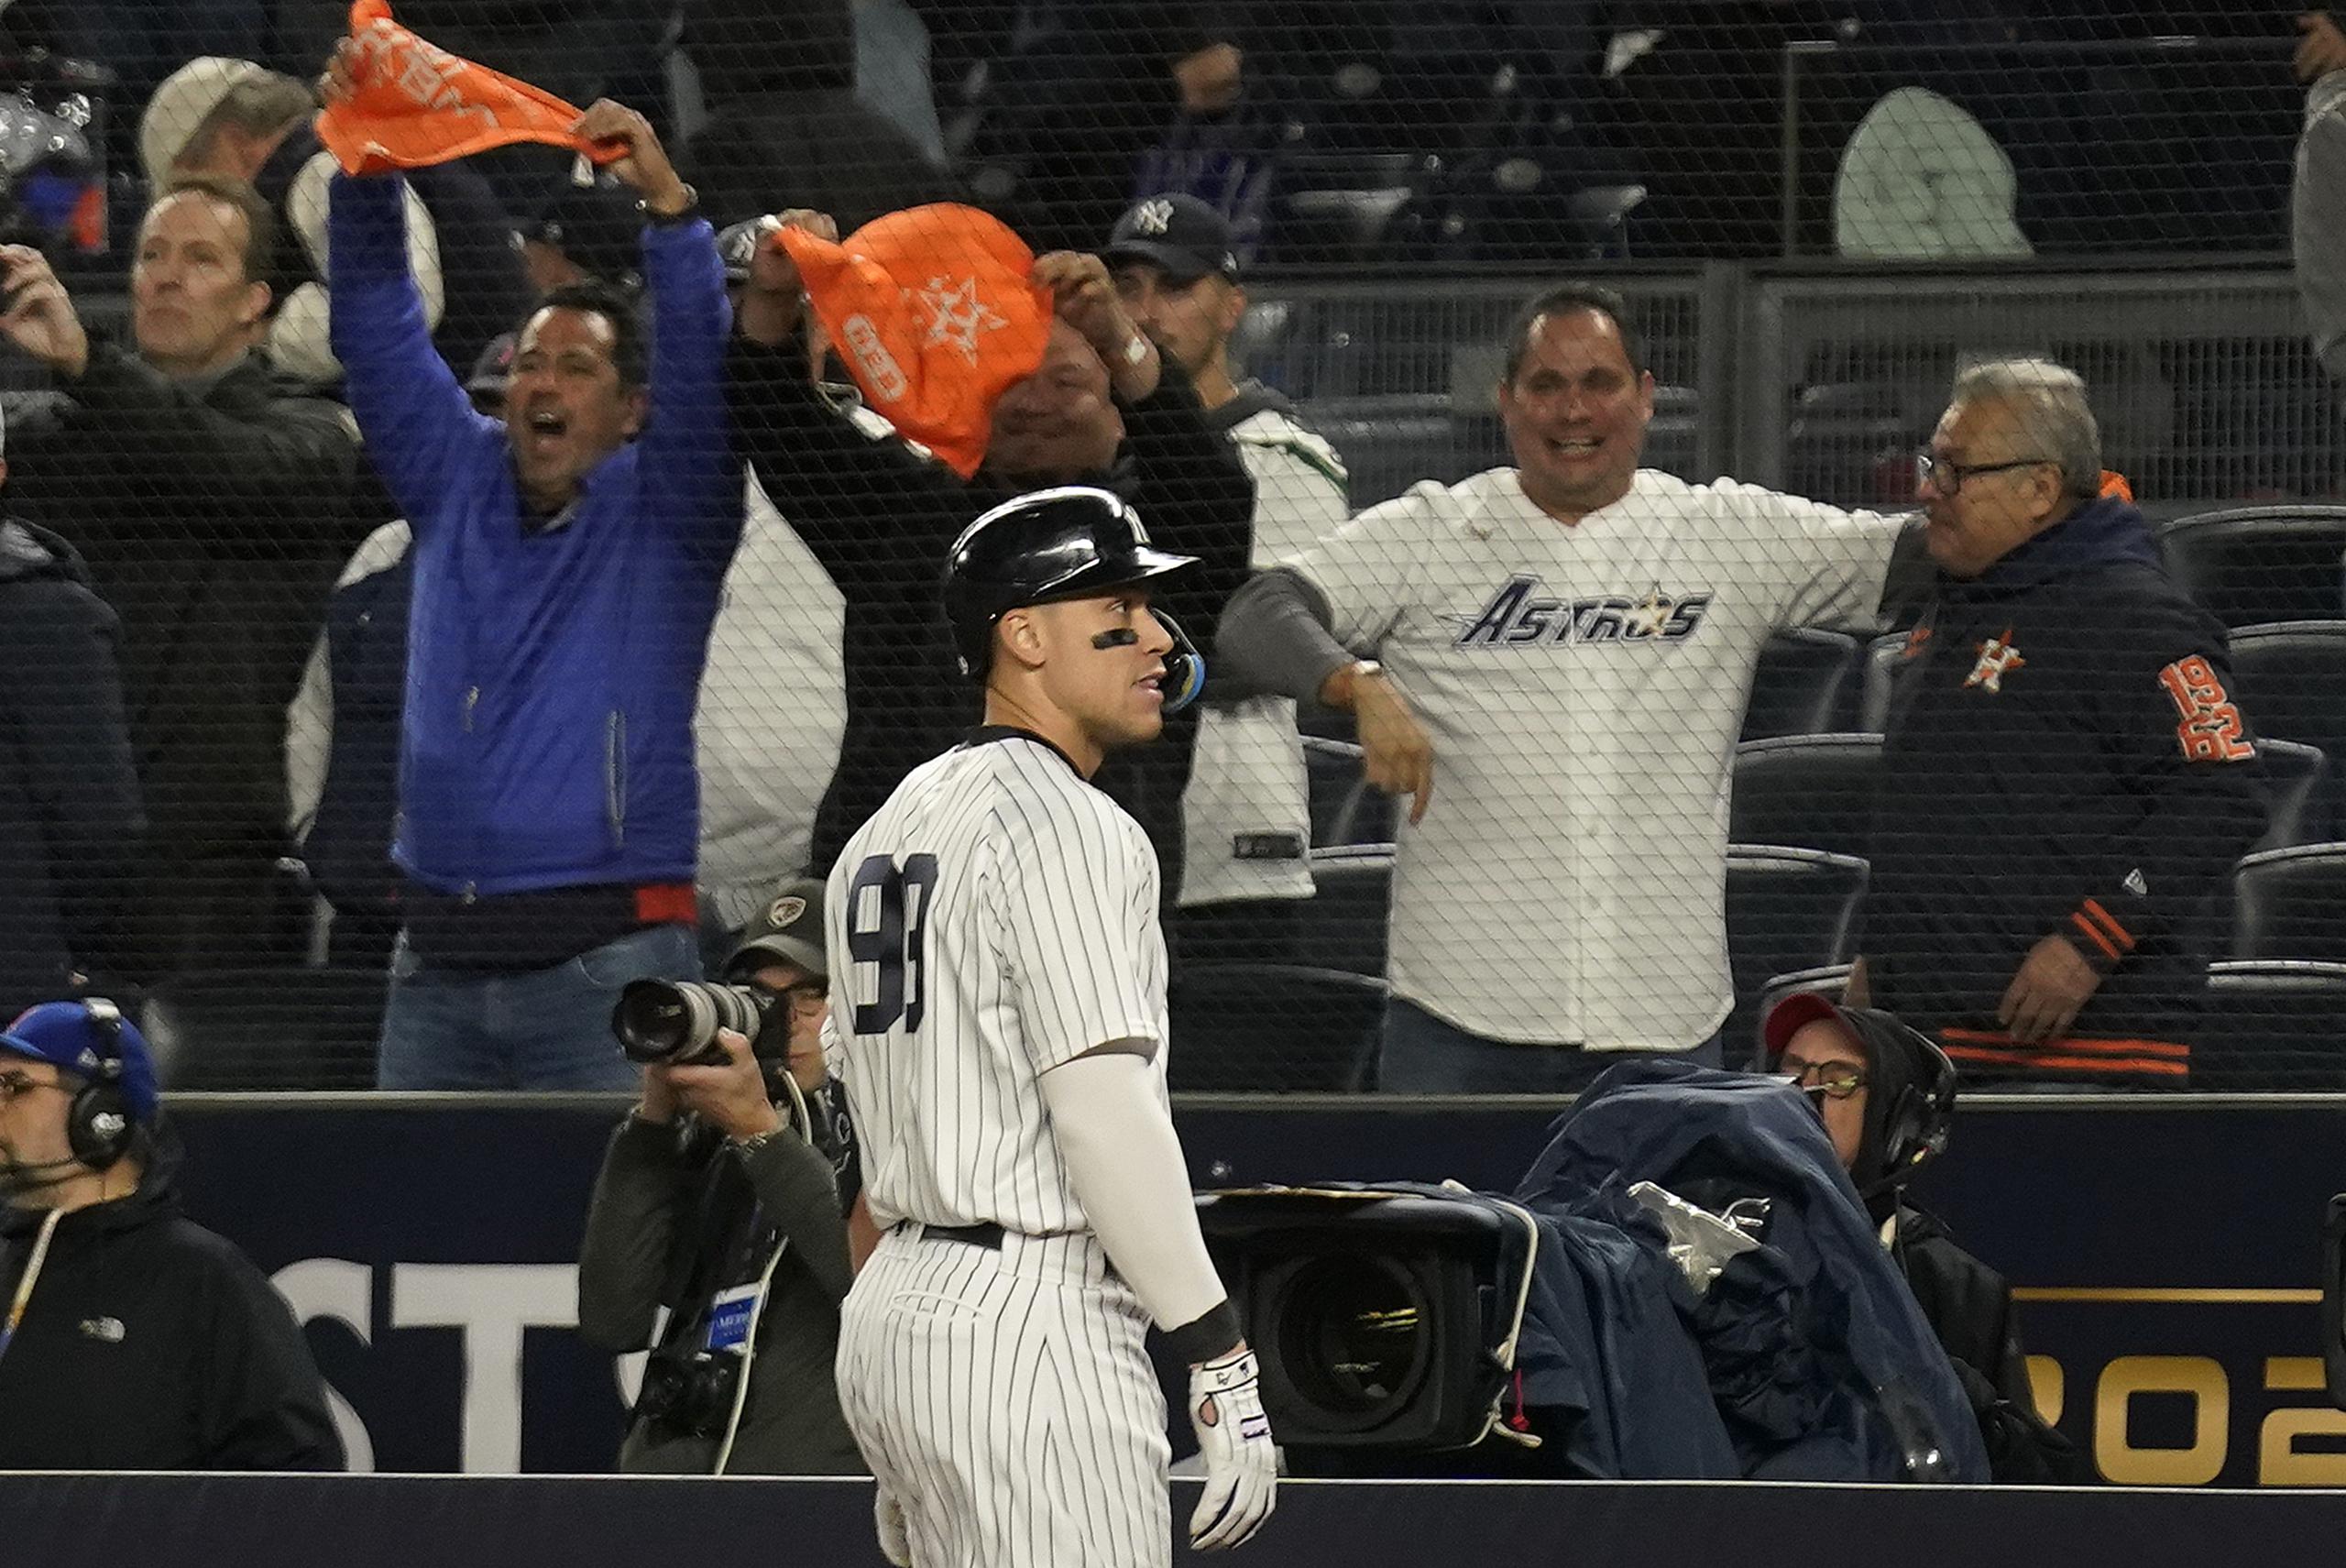 El jardinero de los Yankees de Nueva York, Aaron Judge, podría ser el eje de alegadas conversaciones incorrectas entre los propietarios de los Yankees y de los Mets.